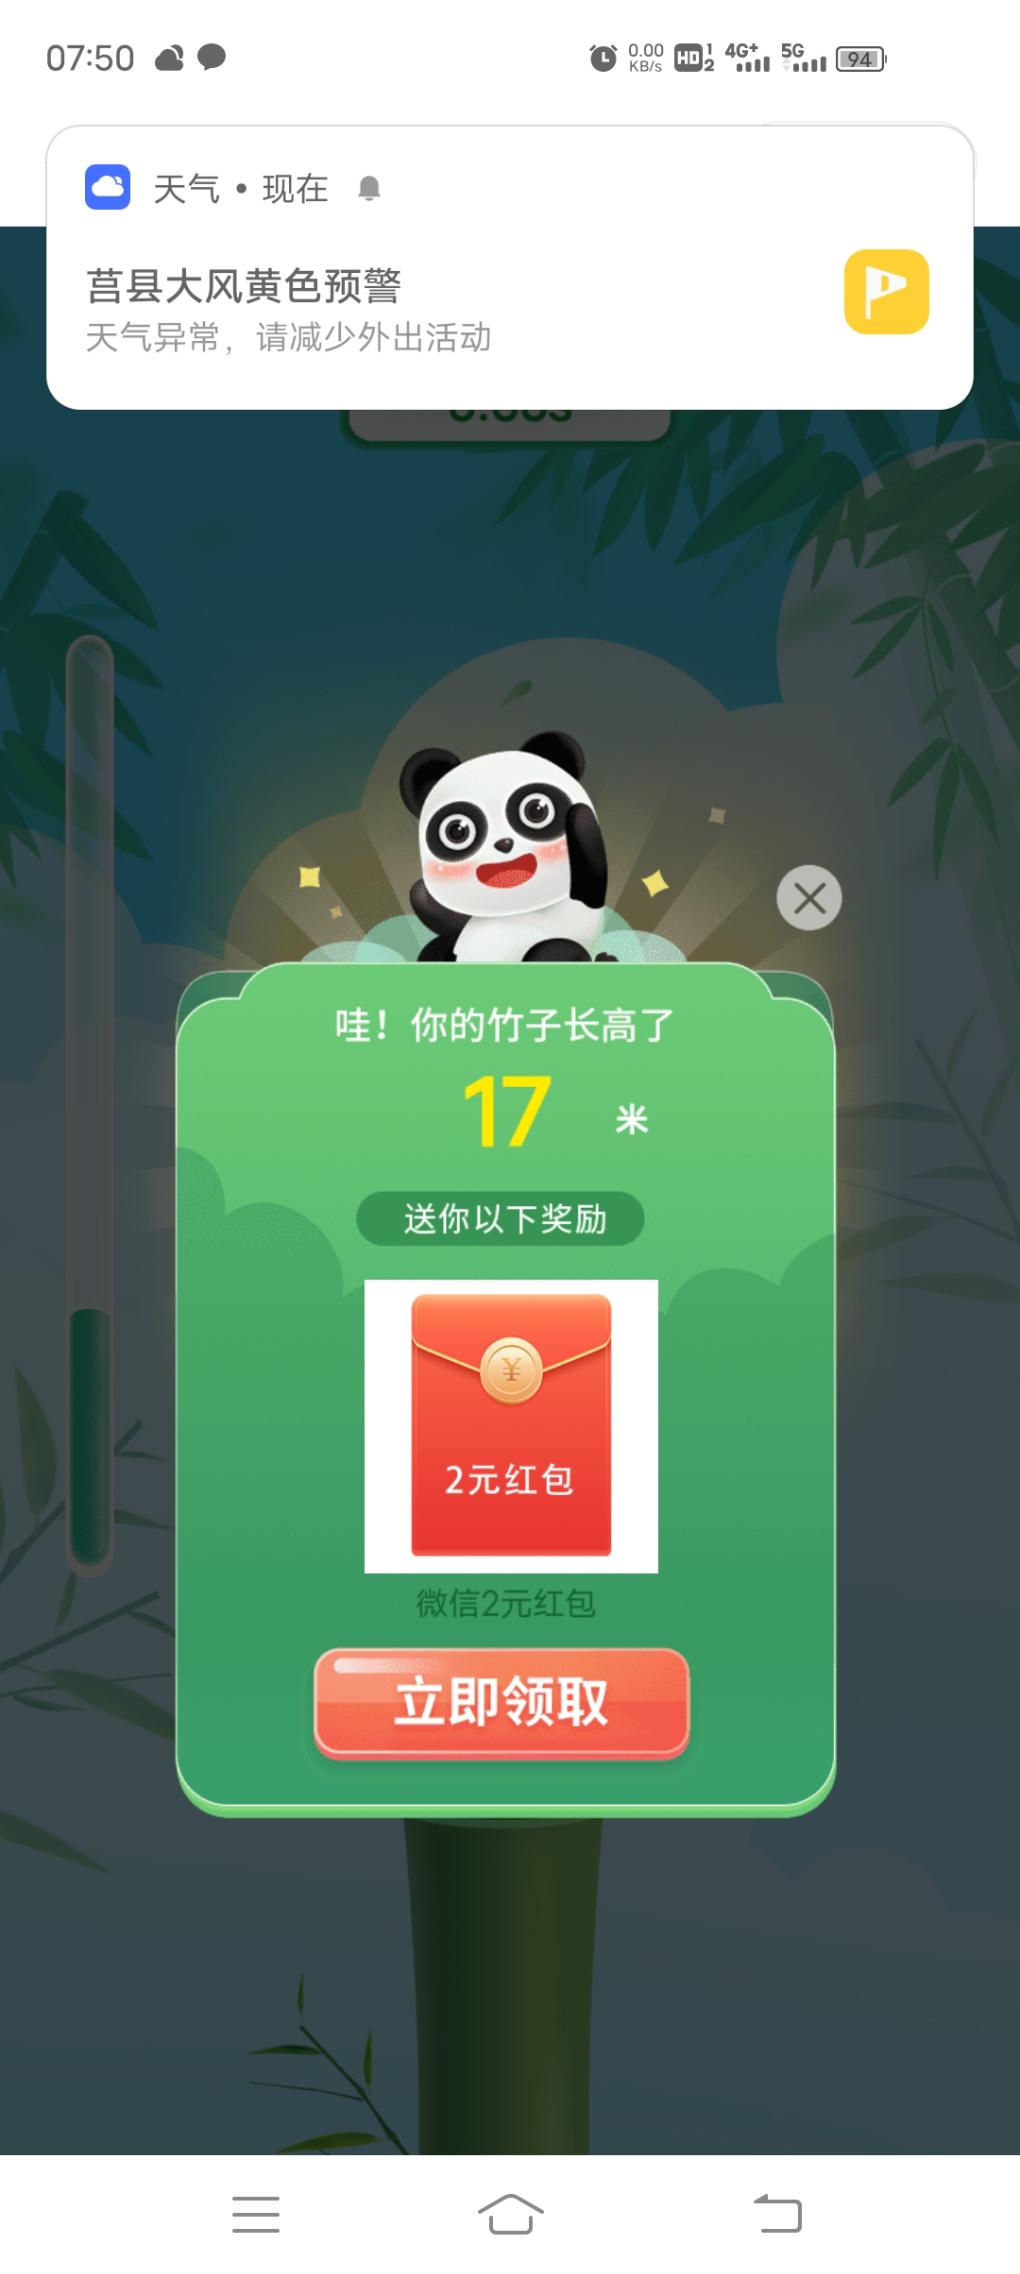 中国银行好礼节节高-惠小助(52huixz.com)